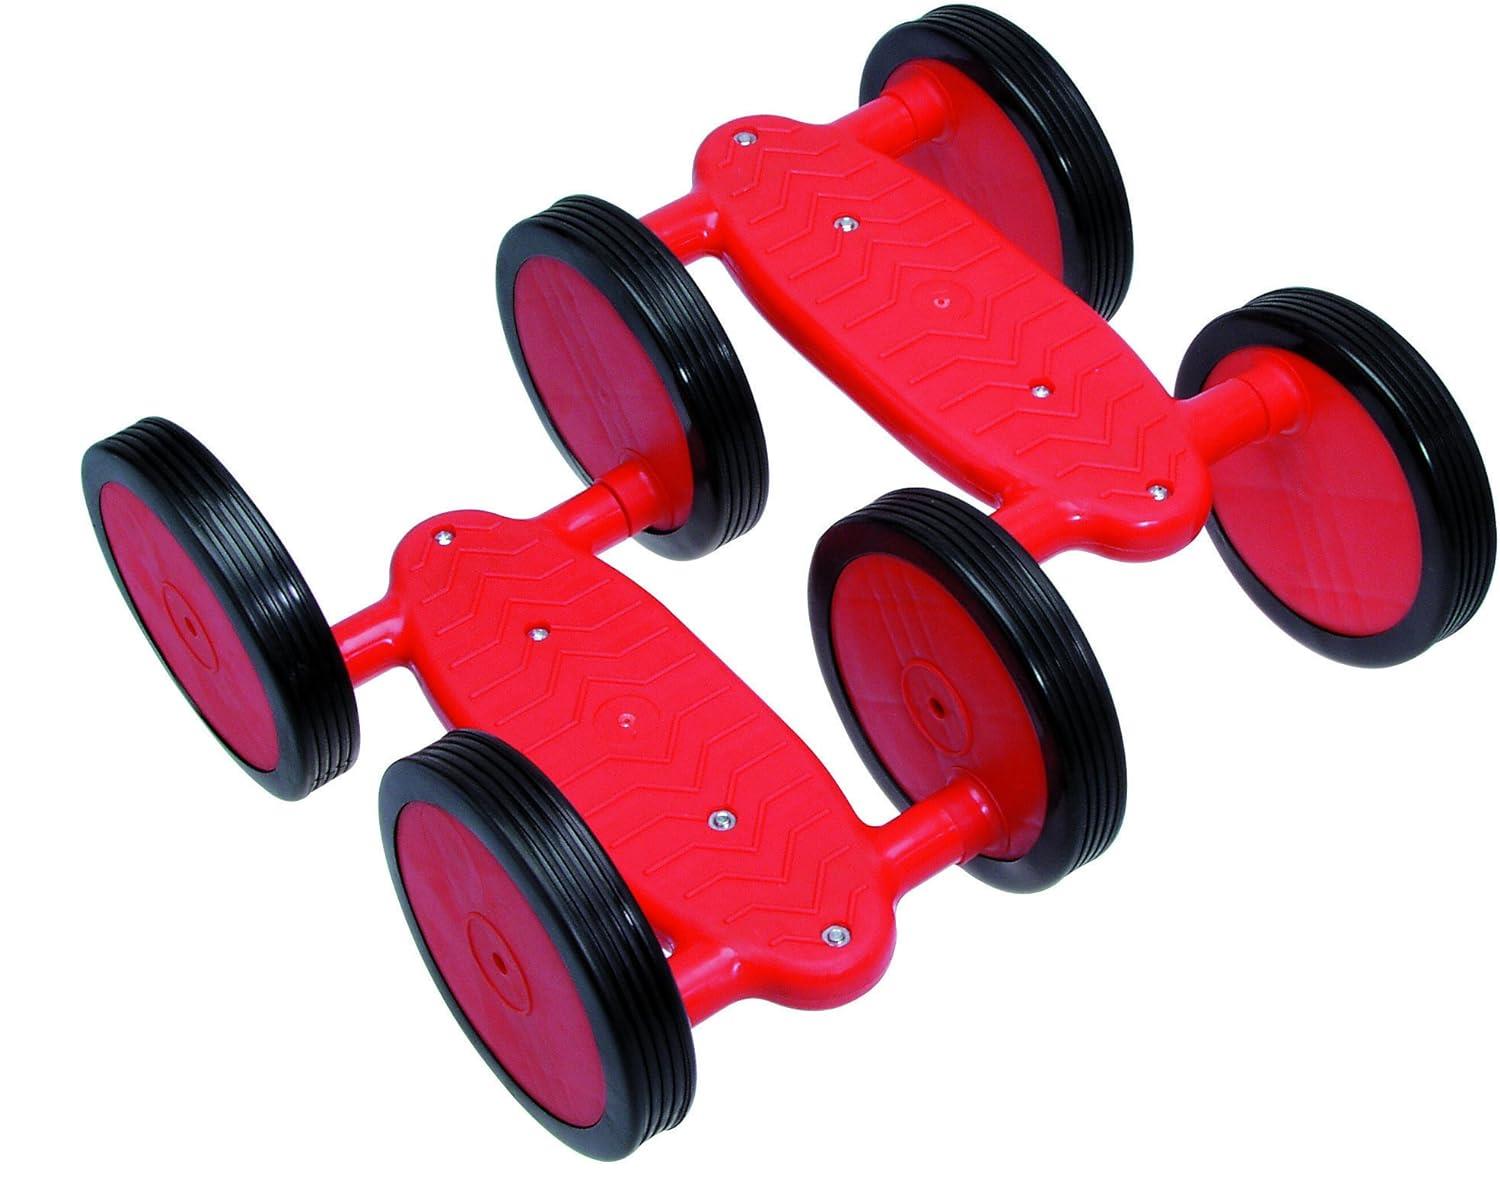 BLS Pedal Roller 676-49 Eco Tretl Fördert Gleichgewicht und Koordination bis 60kg Spielzeug